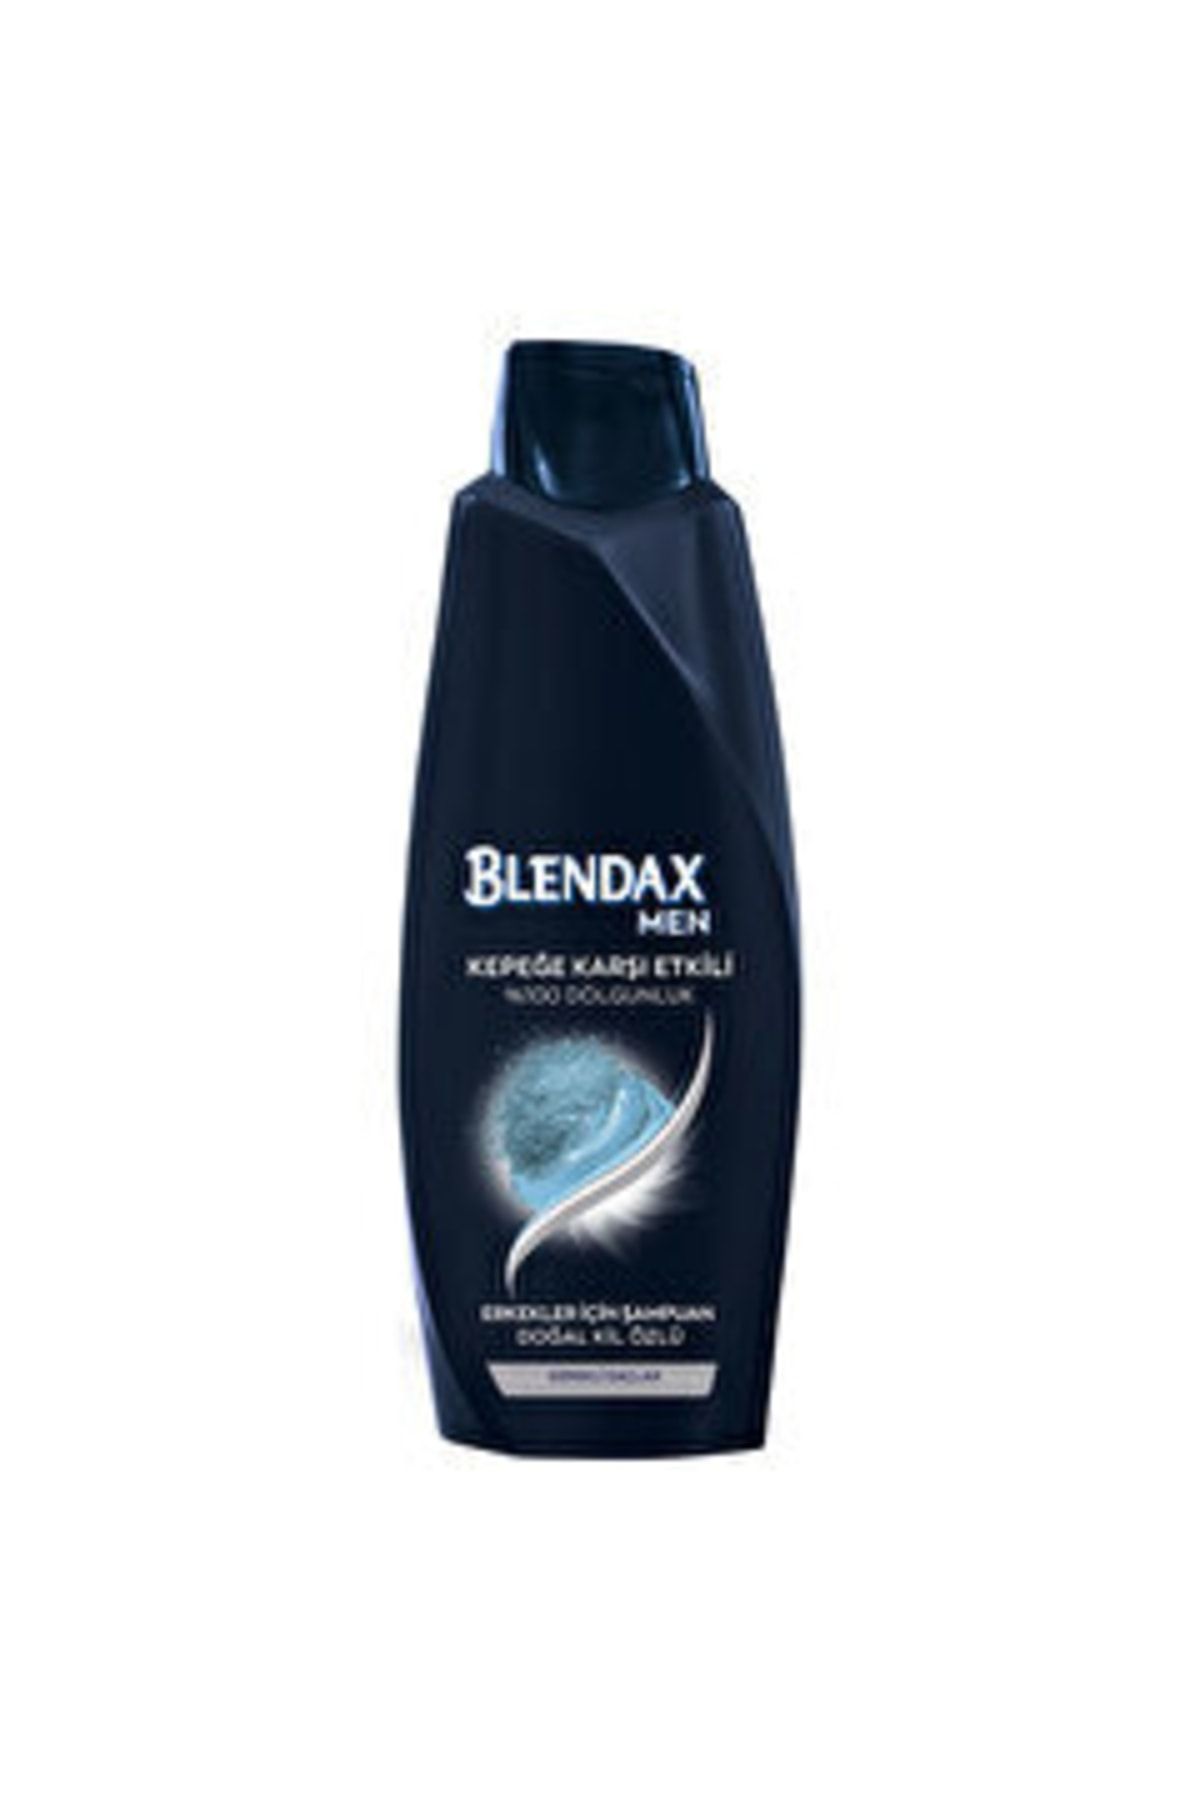 Blendax Erkek Şampuan Kepeğe Karşı Etkili 500 Ml